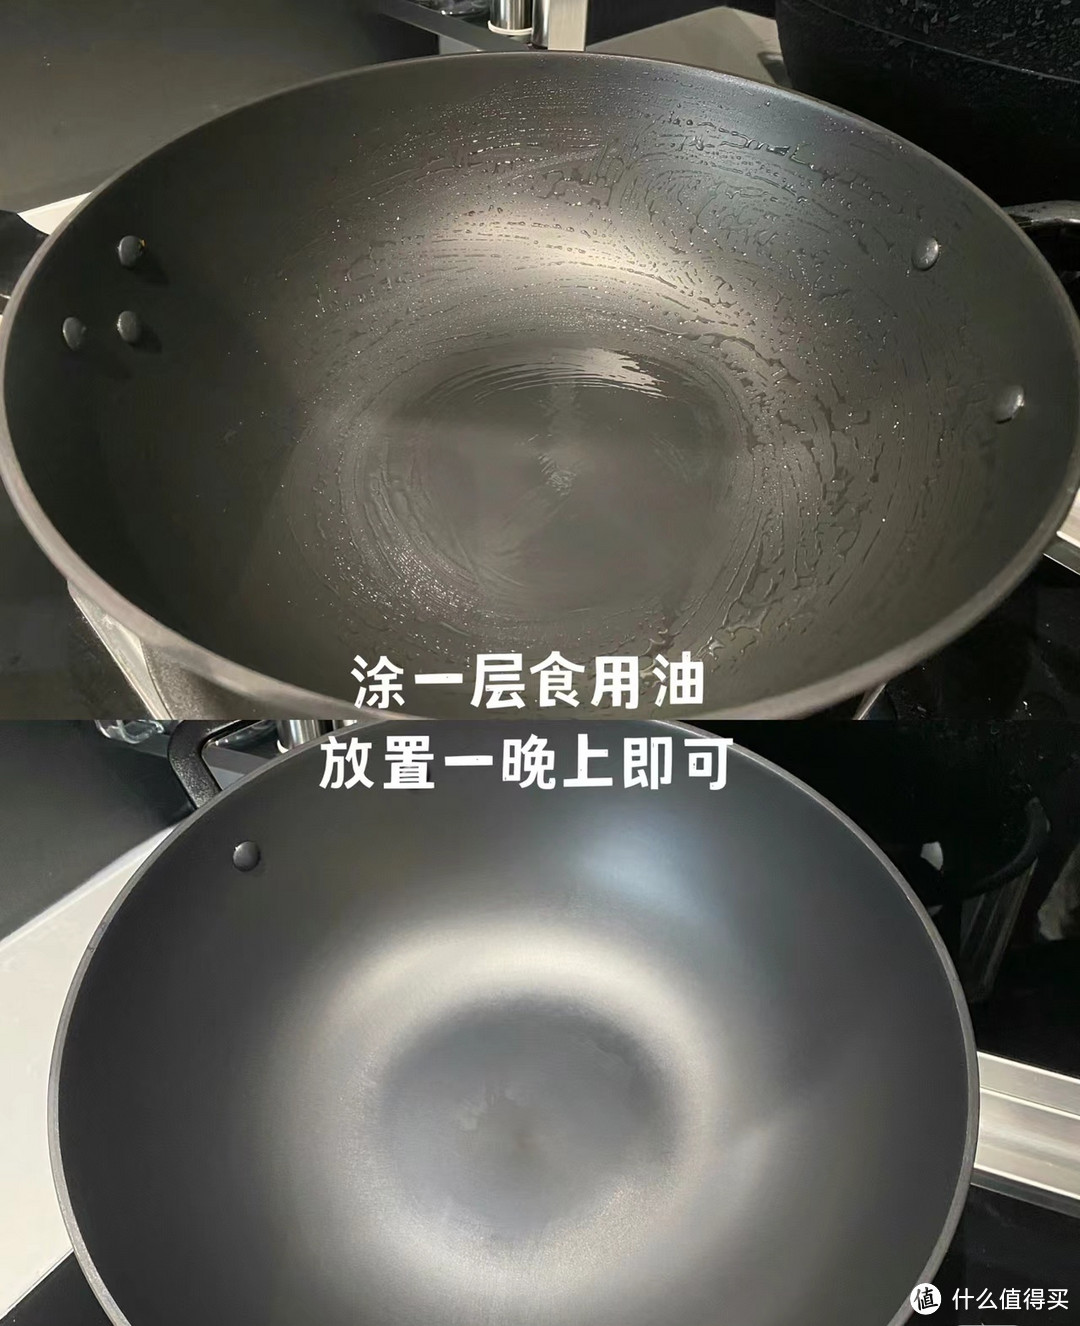 这样开锅养锅，几十元的铁锅比几百元的不粘锅都好用！